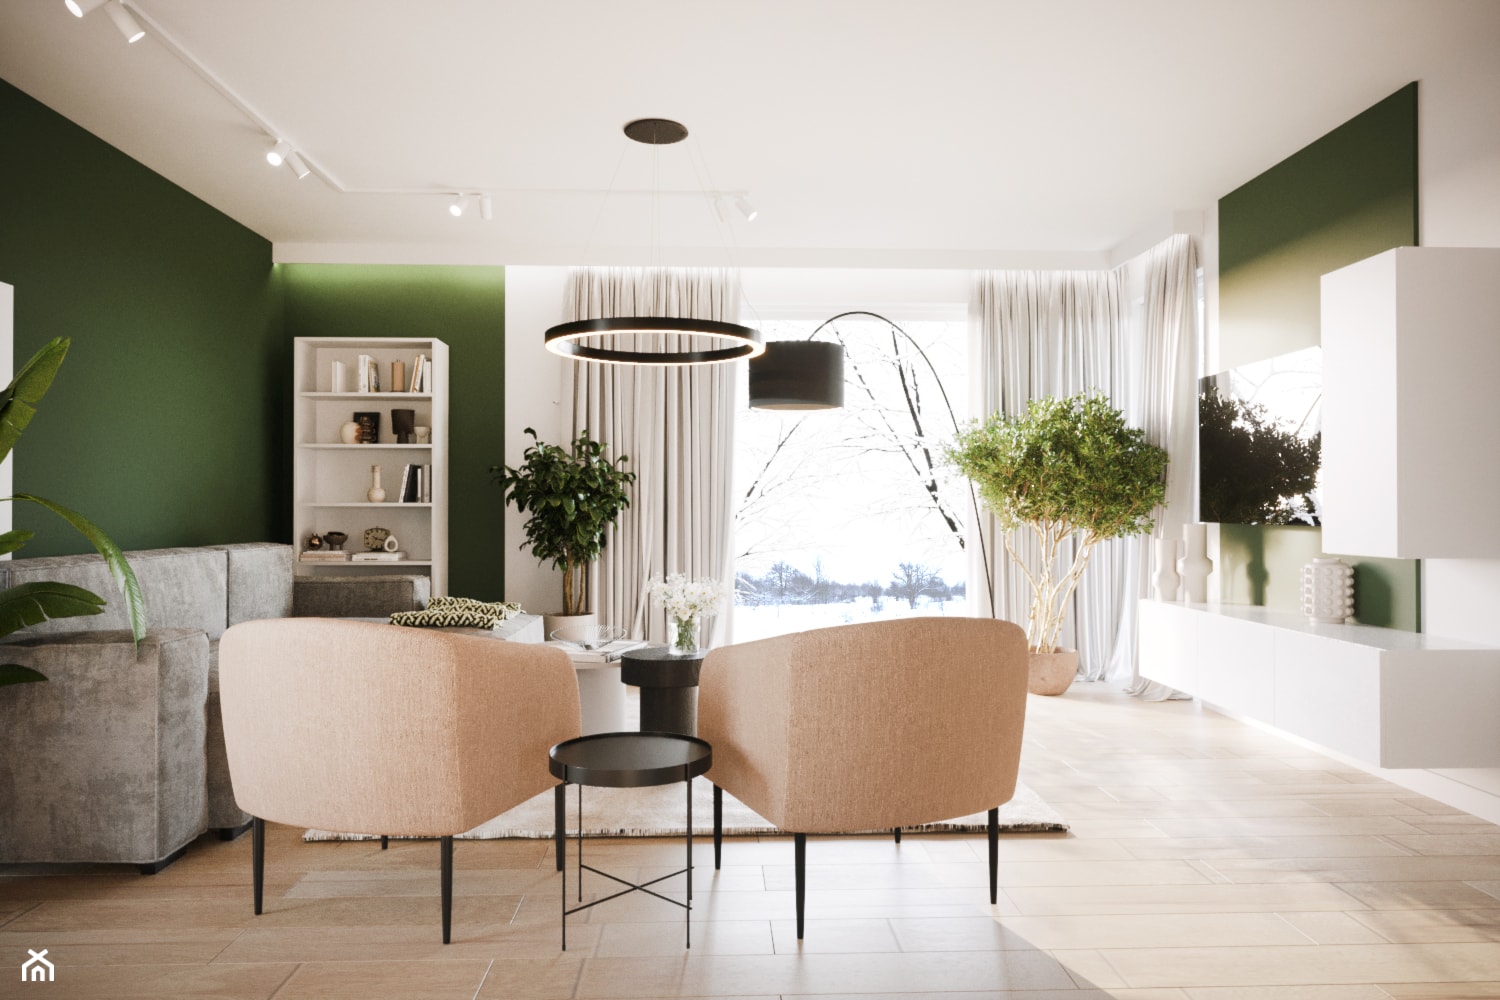 Salon w kolorach ziemi z zieloną ścianą w beżowym zestawieniu - Salon, styl nowoczesny - zdjęcie od Projektowanie Wnetrz Online - Homebook